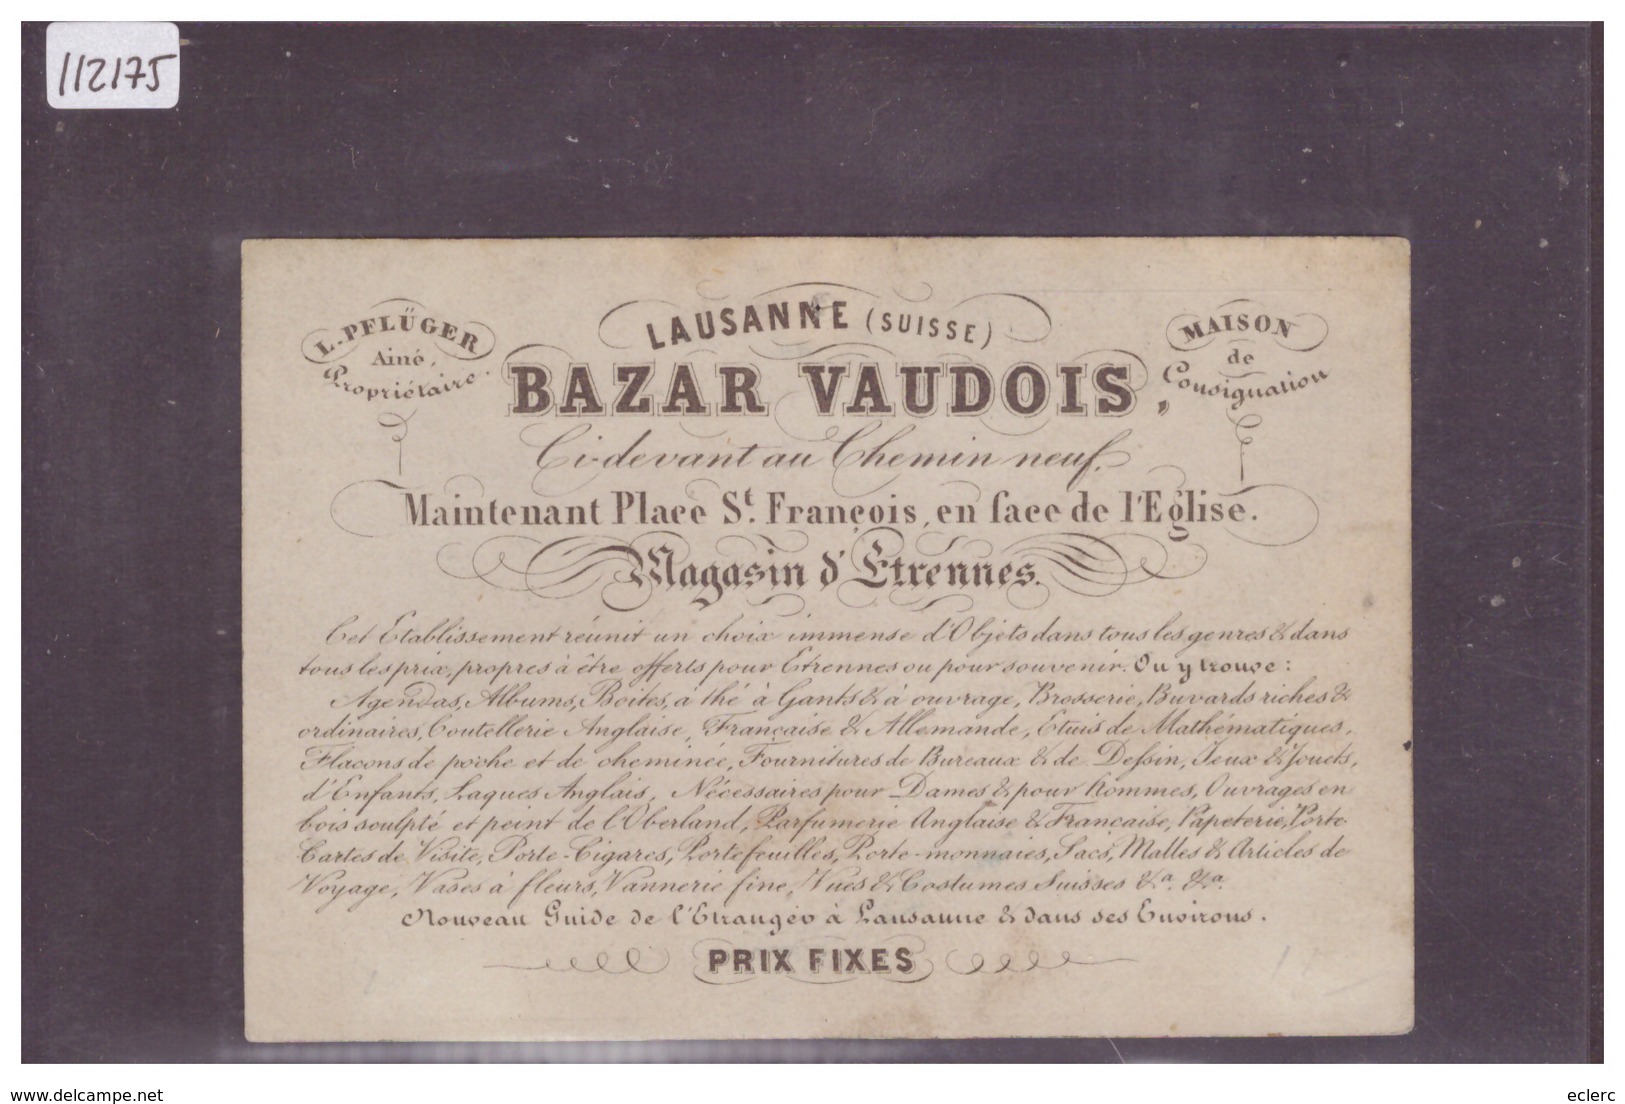 LAUSANNE - BAZAR VAUDOIS, PLACE ST FRANCOIS - CALENDRIER 1858 - CARTE FORMAT 11x7.5 Cm - TB - Lausanne